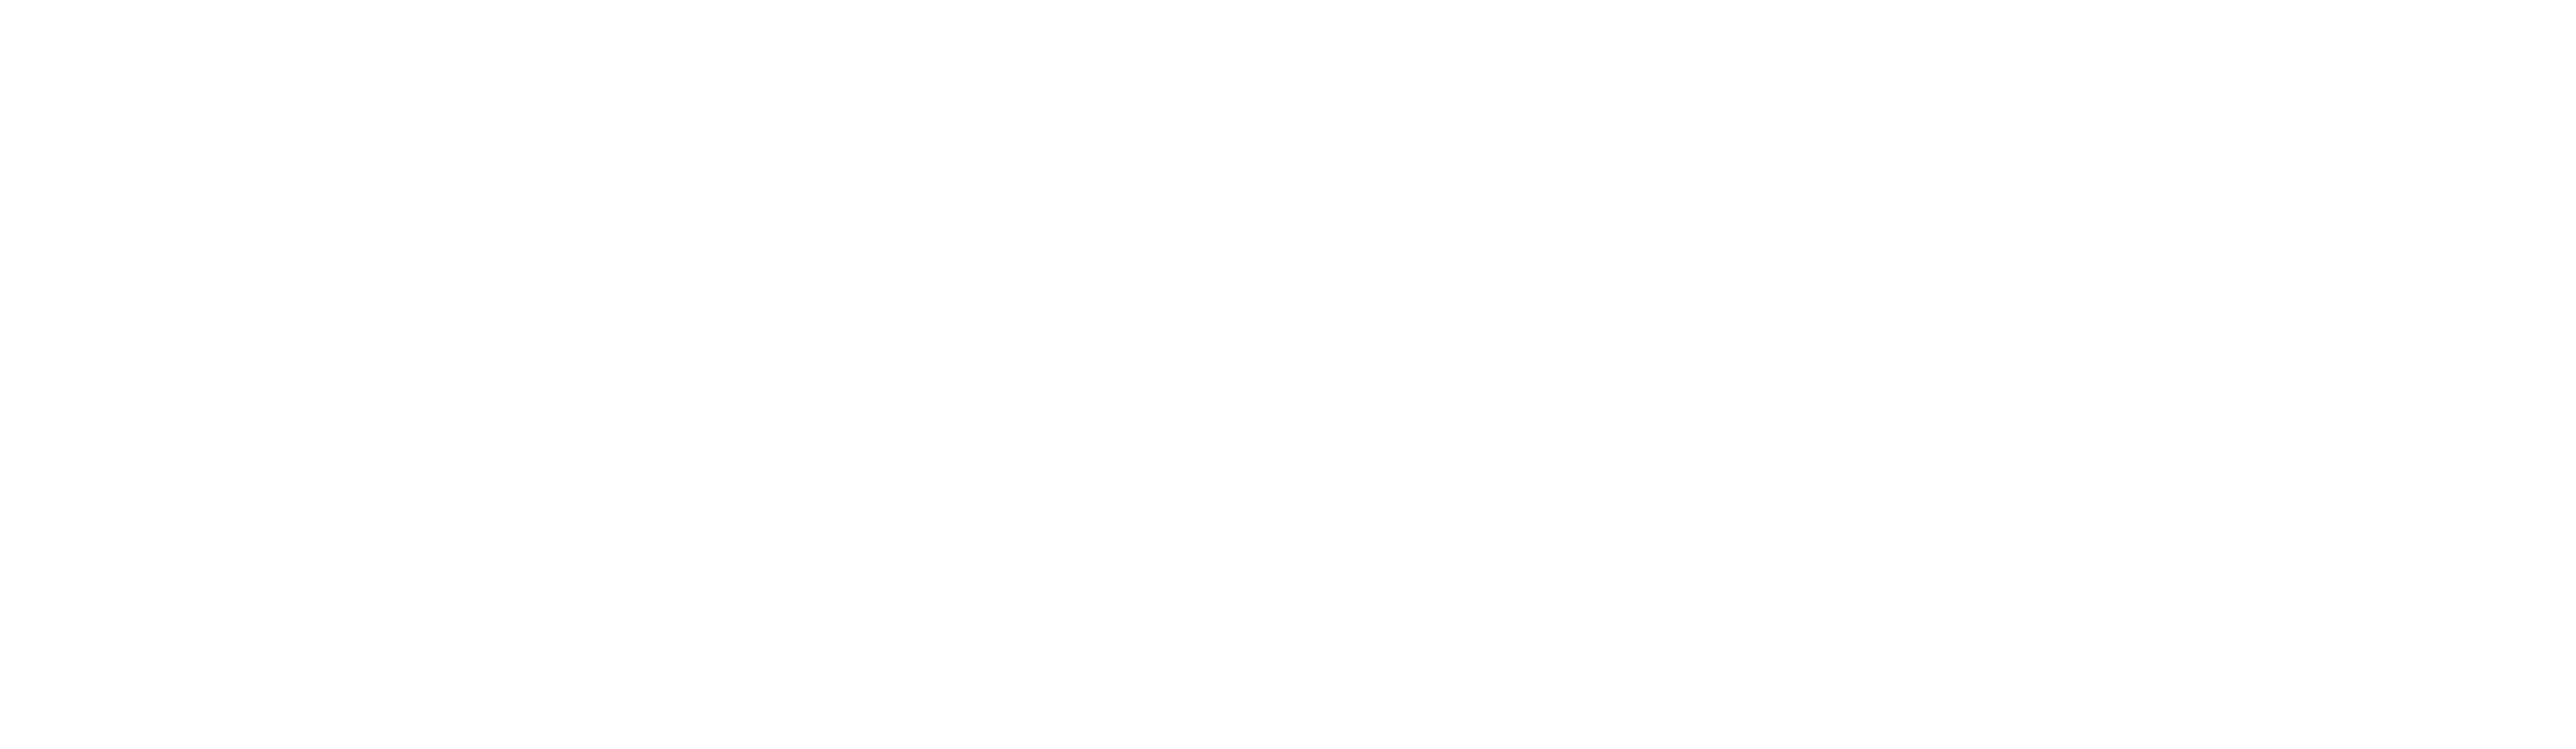 SoBigData Gateway